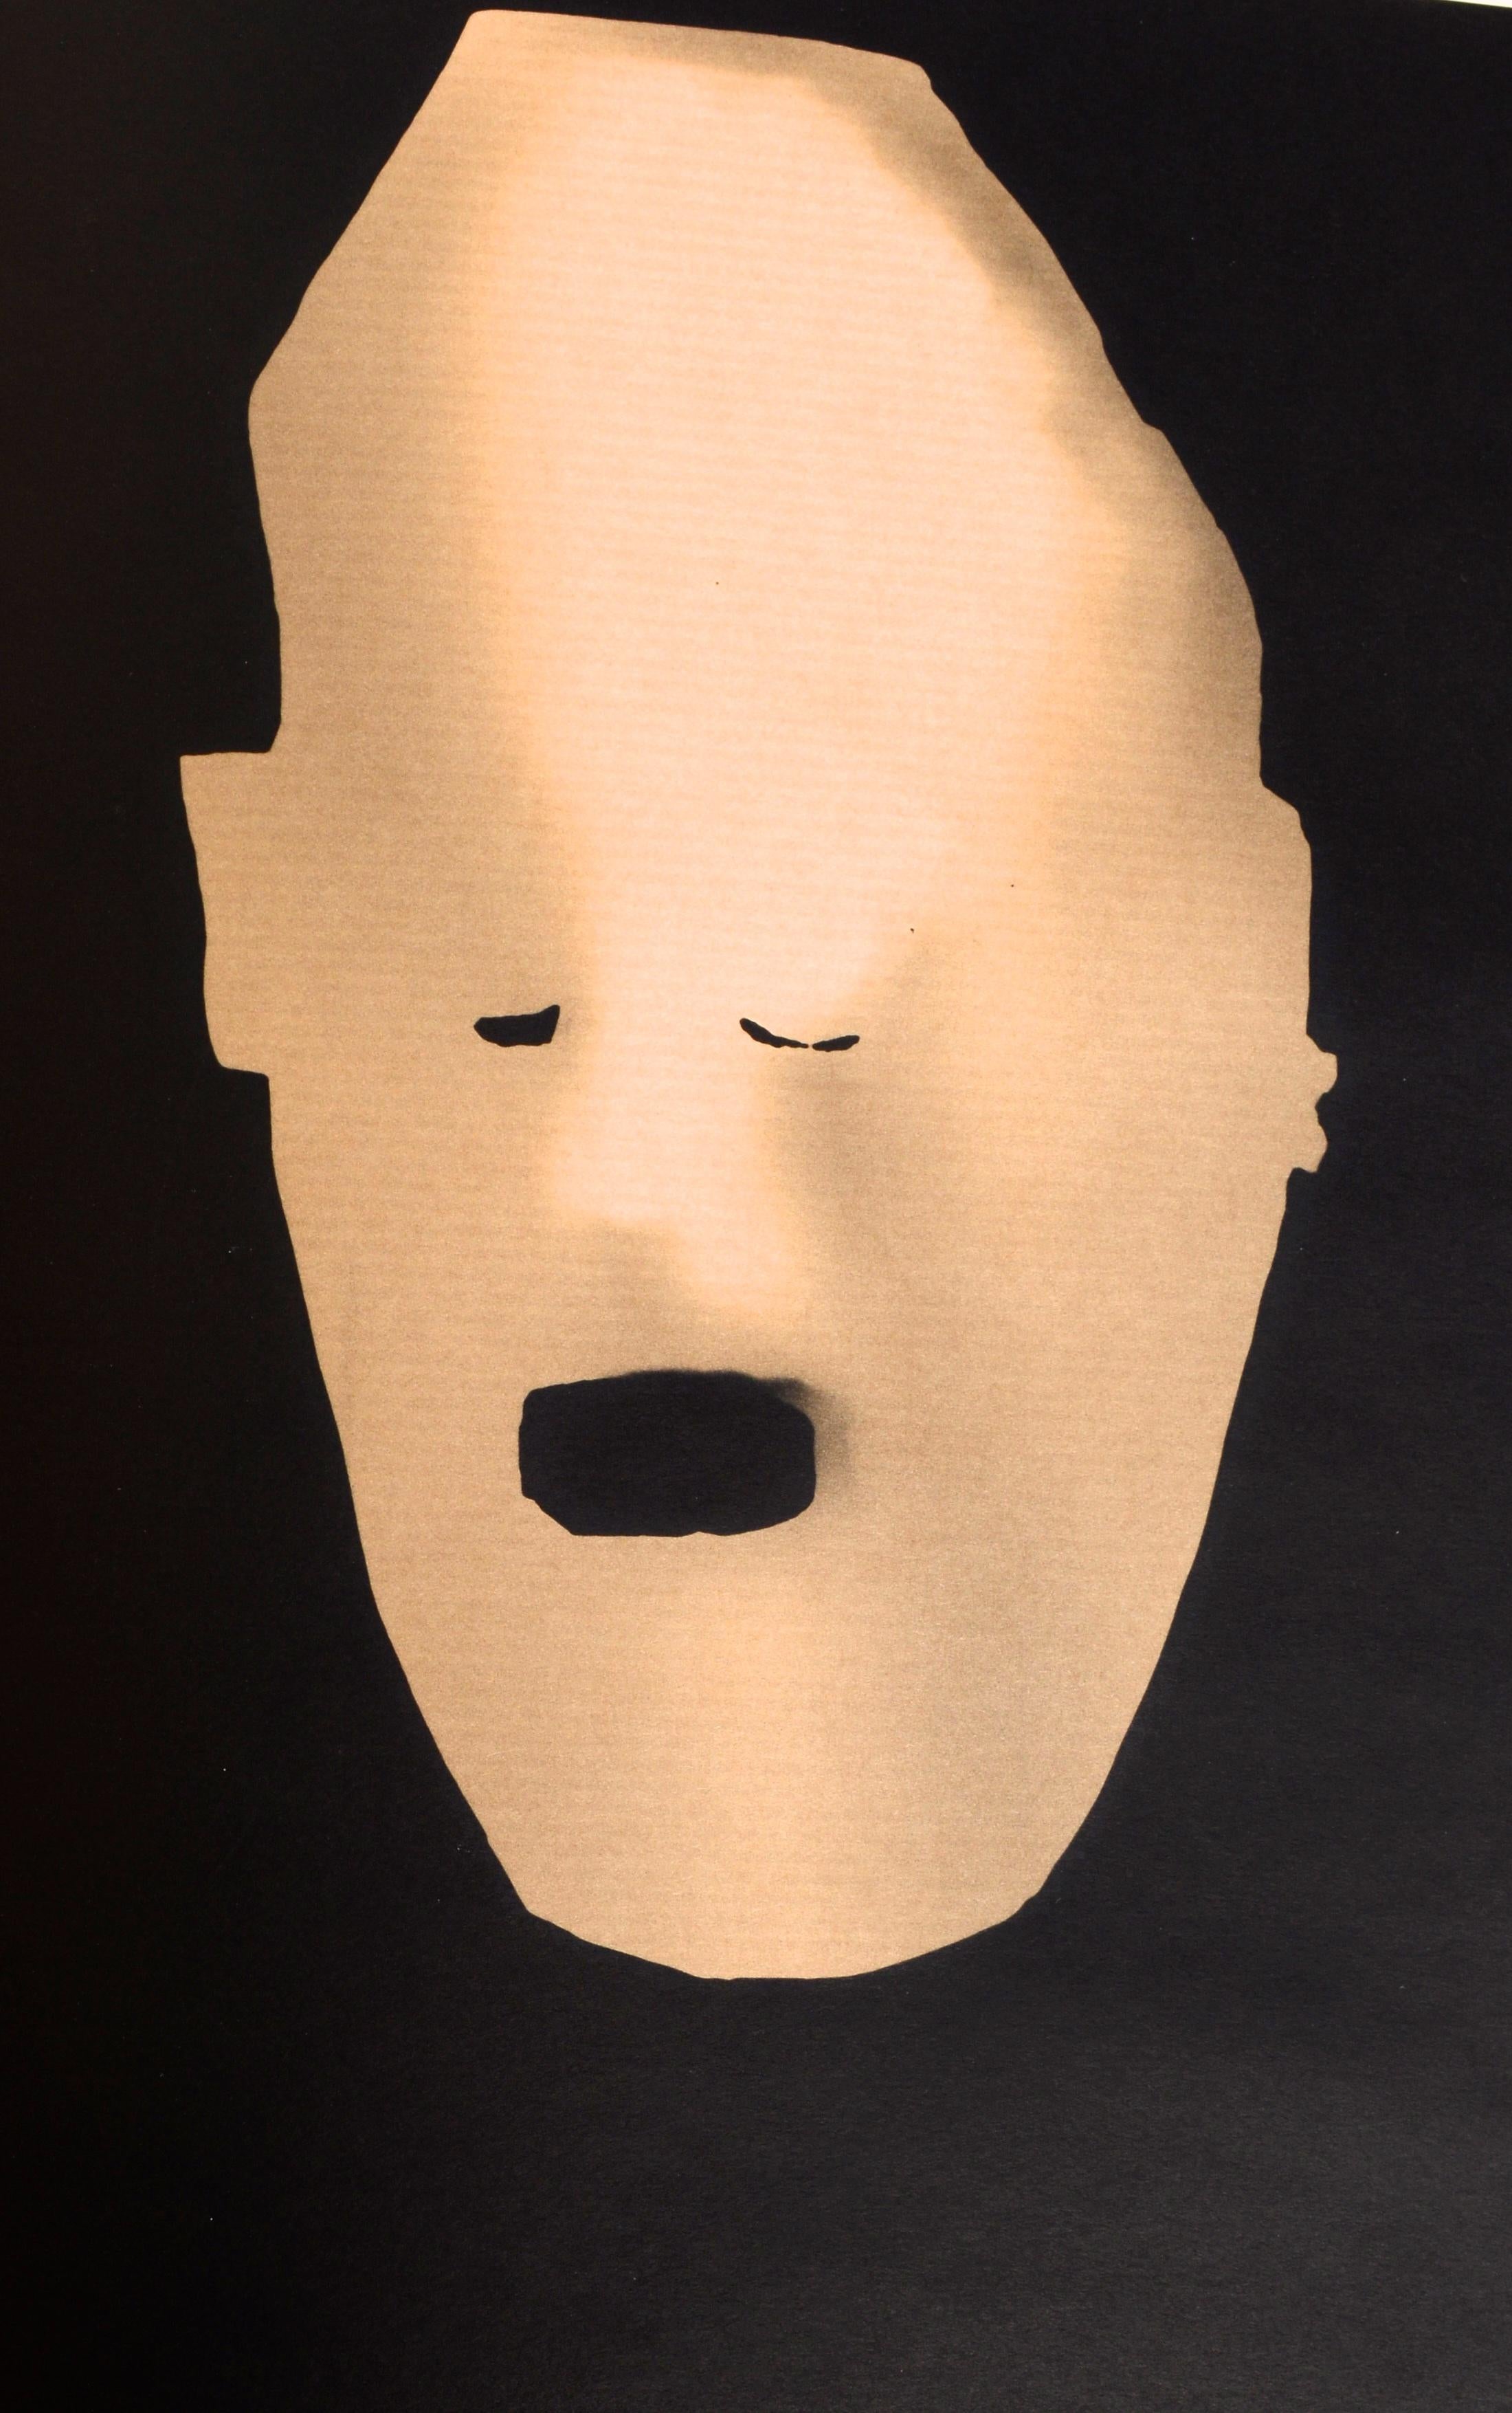 Adam Fuss : Mask par Adam Fuss et Peter Lamborn Wilson. Publié par la Galerie Baldwin, 2005. 1ère édition, couverture rigide avec étui, catalogue d'exposition. Les photogrammes sont produits en plaçant des masques africains directement sur le papier